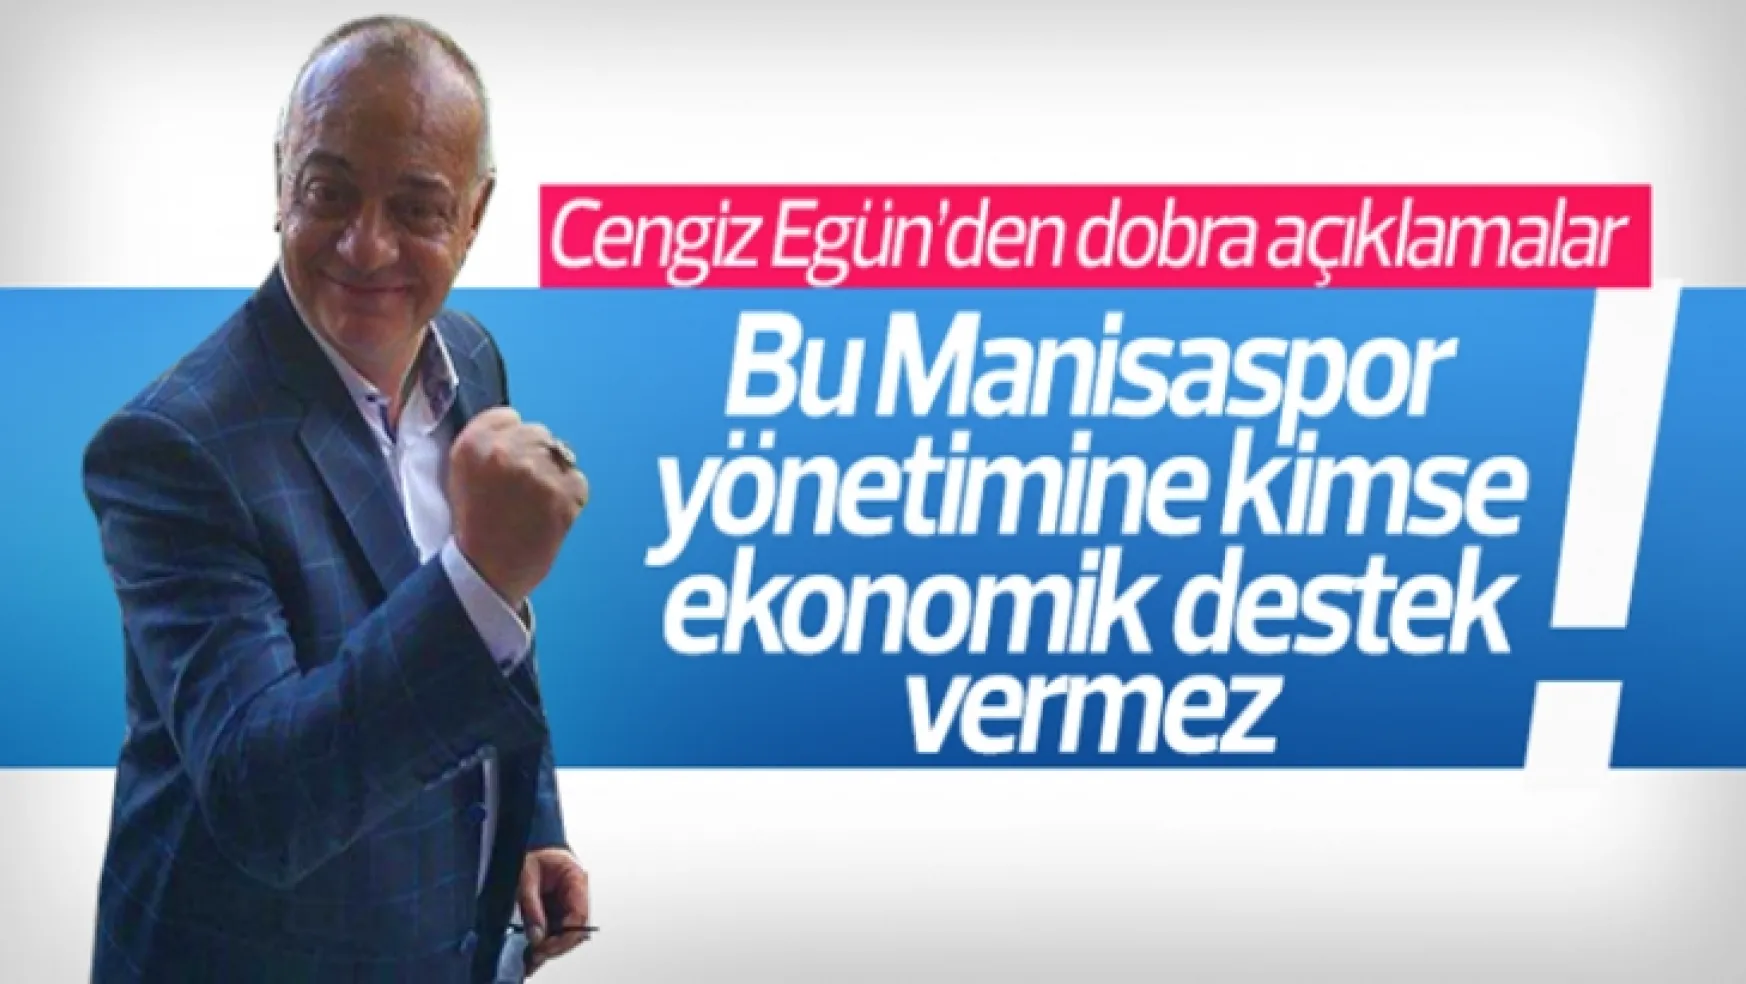 Ergün 'Bu Manisaspor yönetimine kimse ekonomik destek vermez'